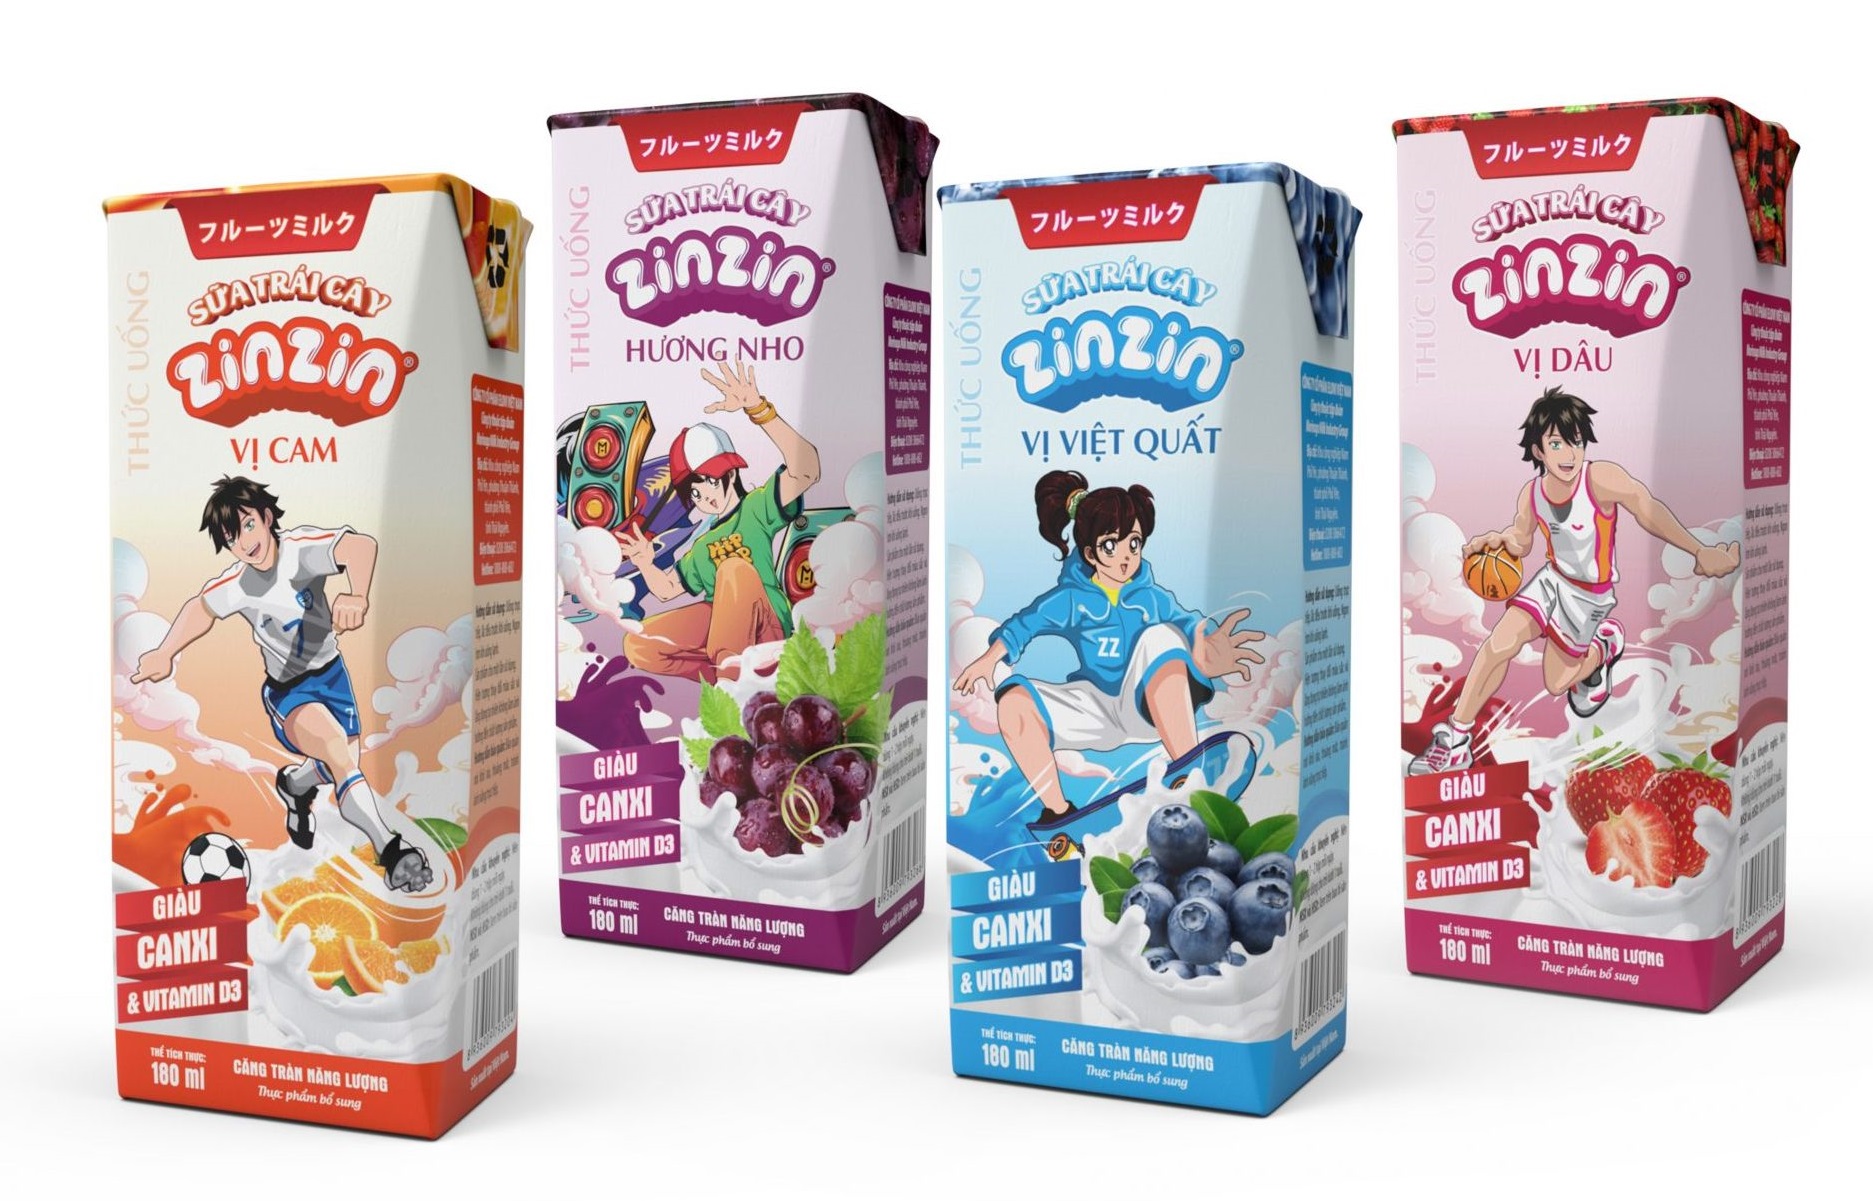 Bác sĩ dinh dưỡng nói uống sữa trái cây thường xuyên có thể làm trẻ biếng ăn, sản phẩm Kun, Vinamilk... đang quảng cáo những gì?